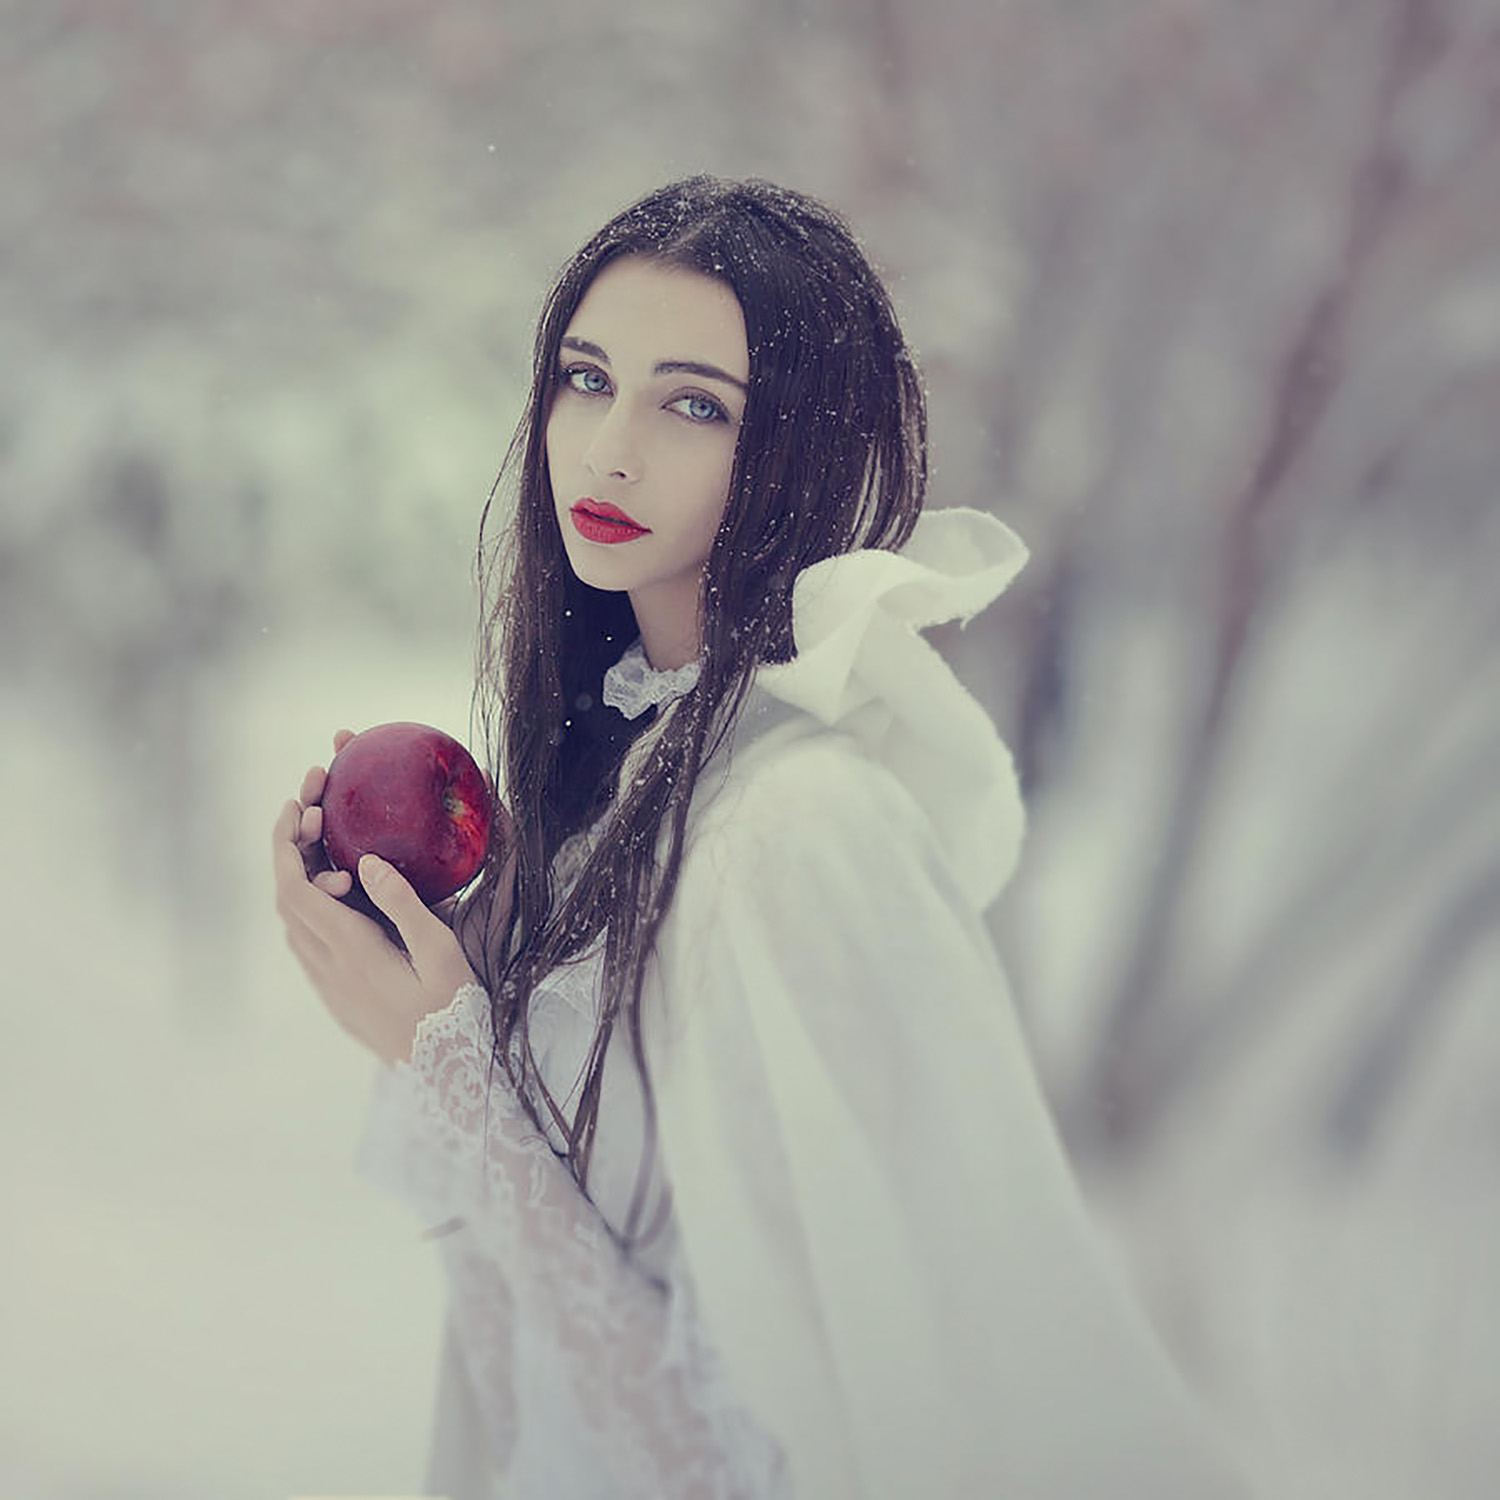 timeless-story-of-snow-white-1-anka-zhuravleva